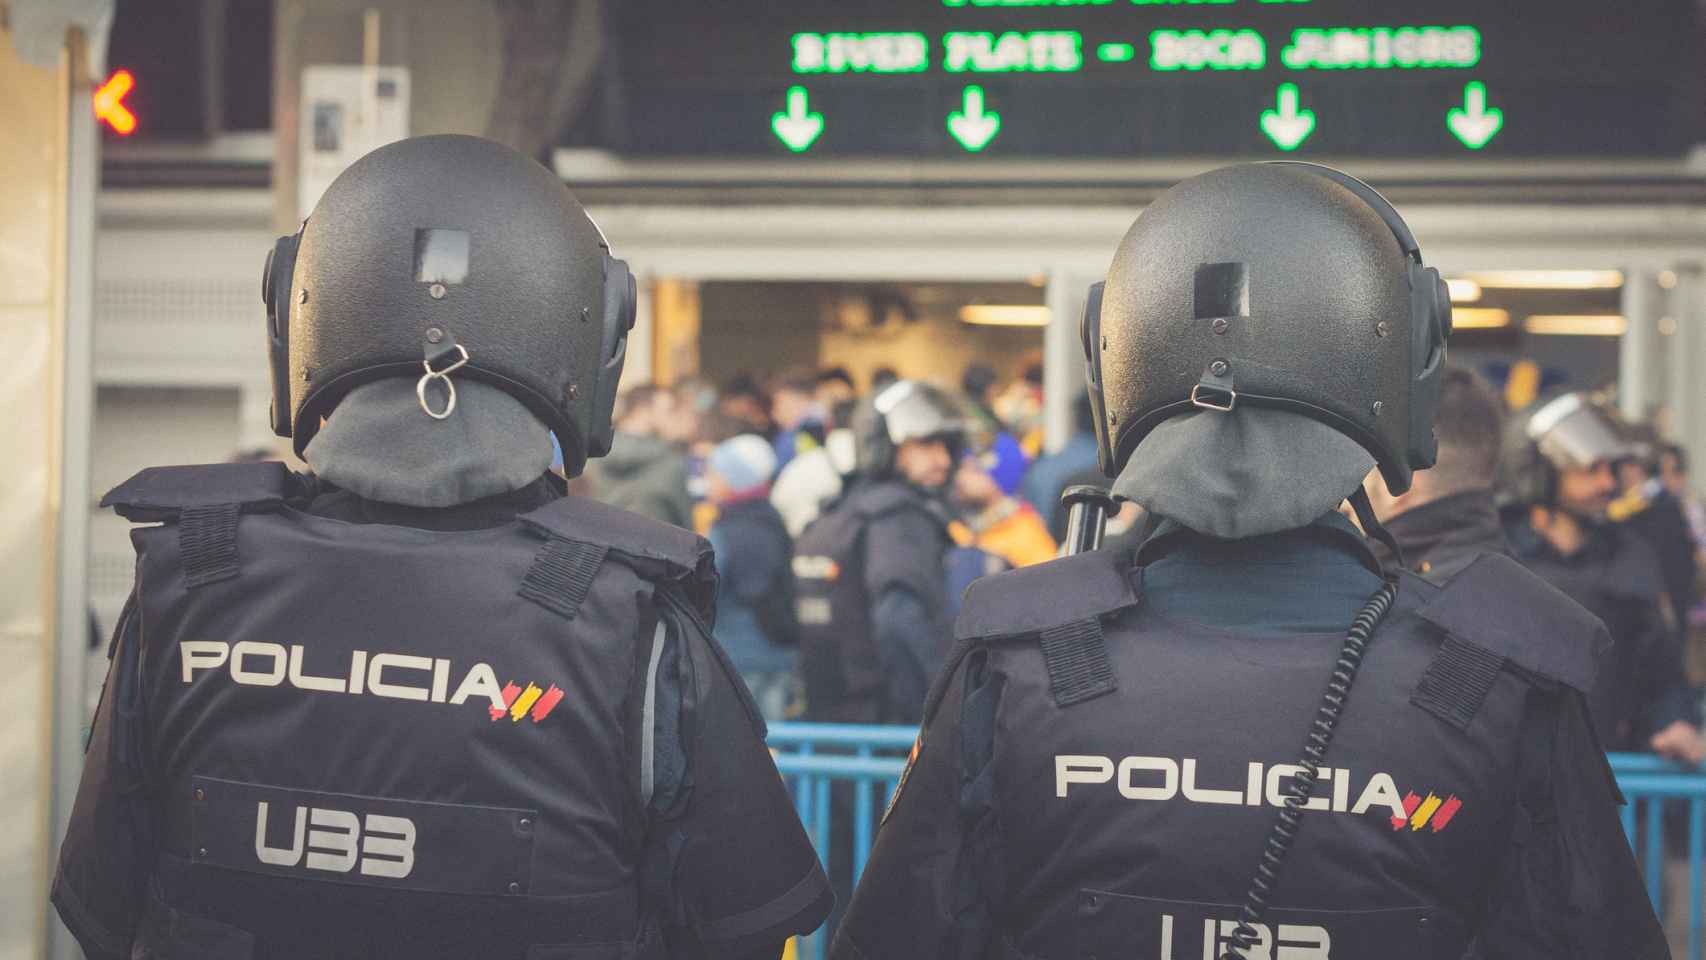 Policías en el partido de la Copa Libertadores entre el River Place y el Boca Juniors  en el estadio Santiago Bernabéu.